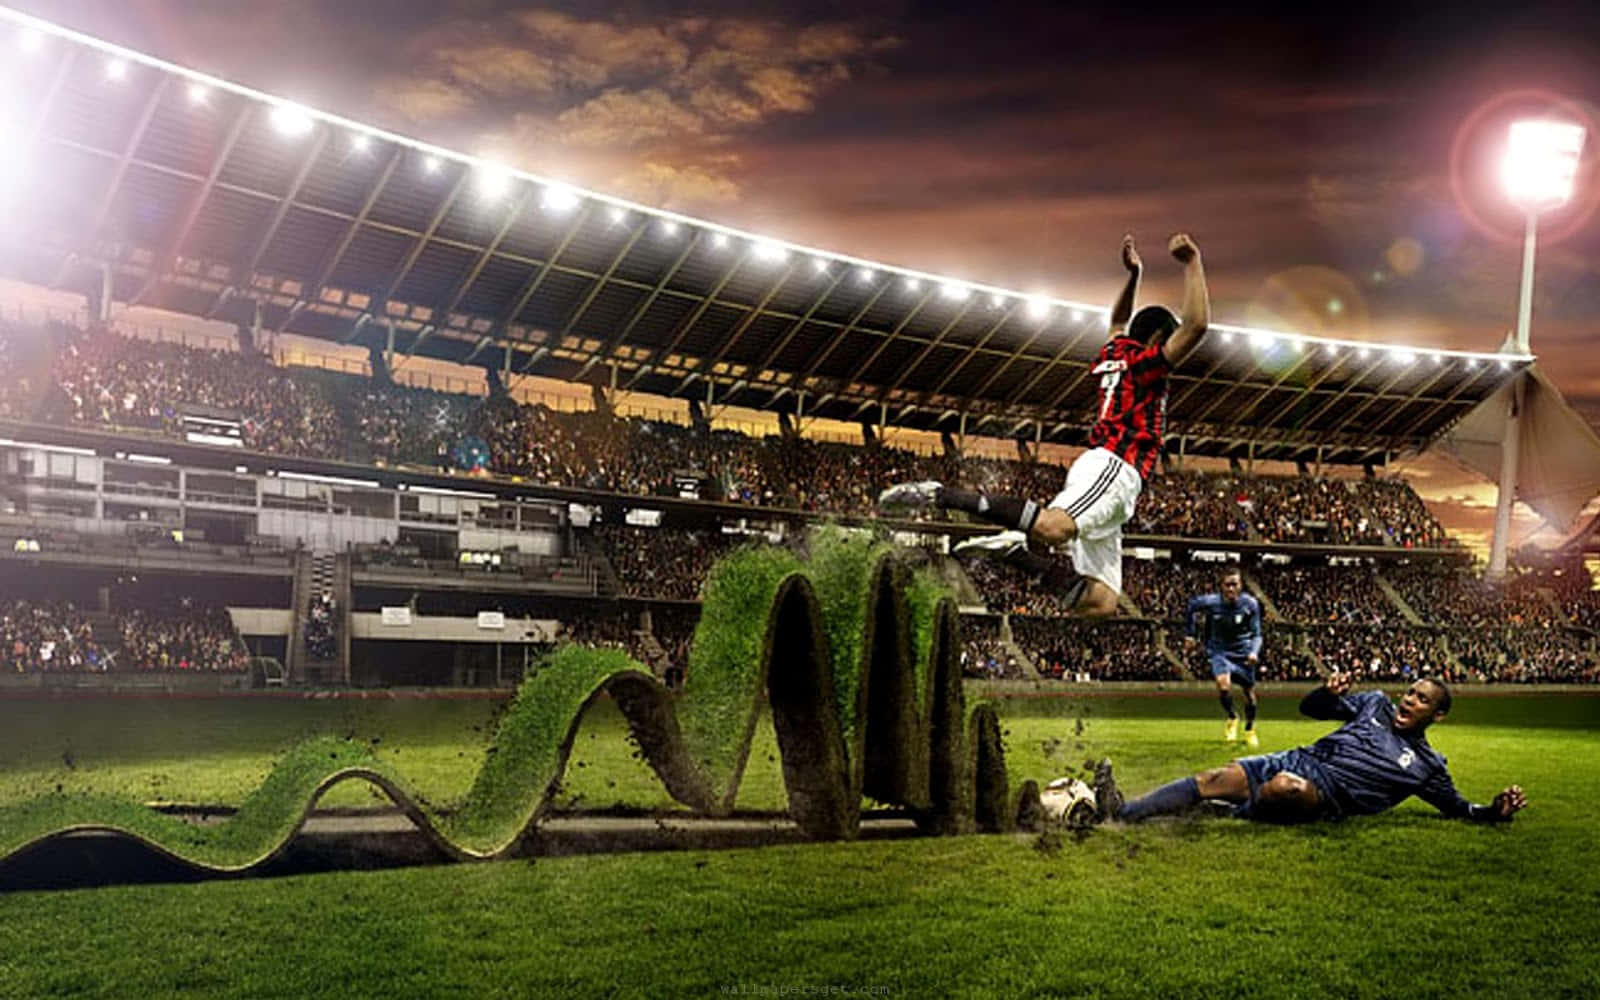 Engraçadojogador De Futebol De Esportes Raspando A Grama No Campo Imagem.